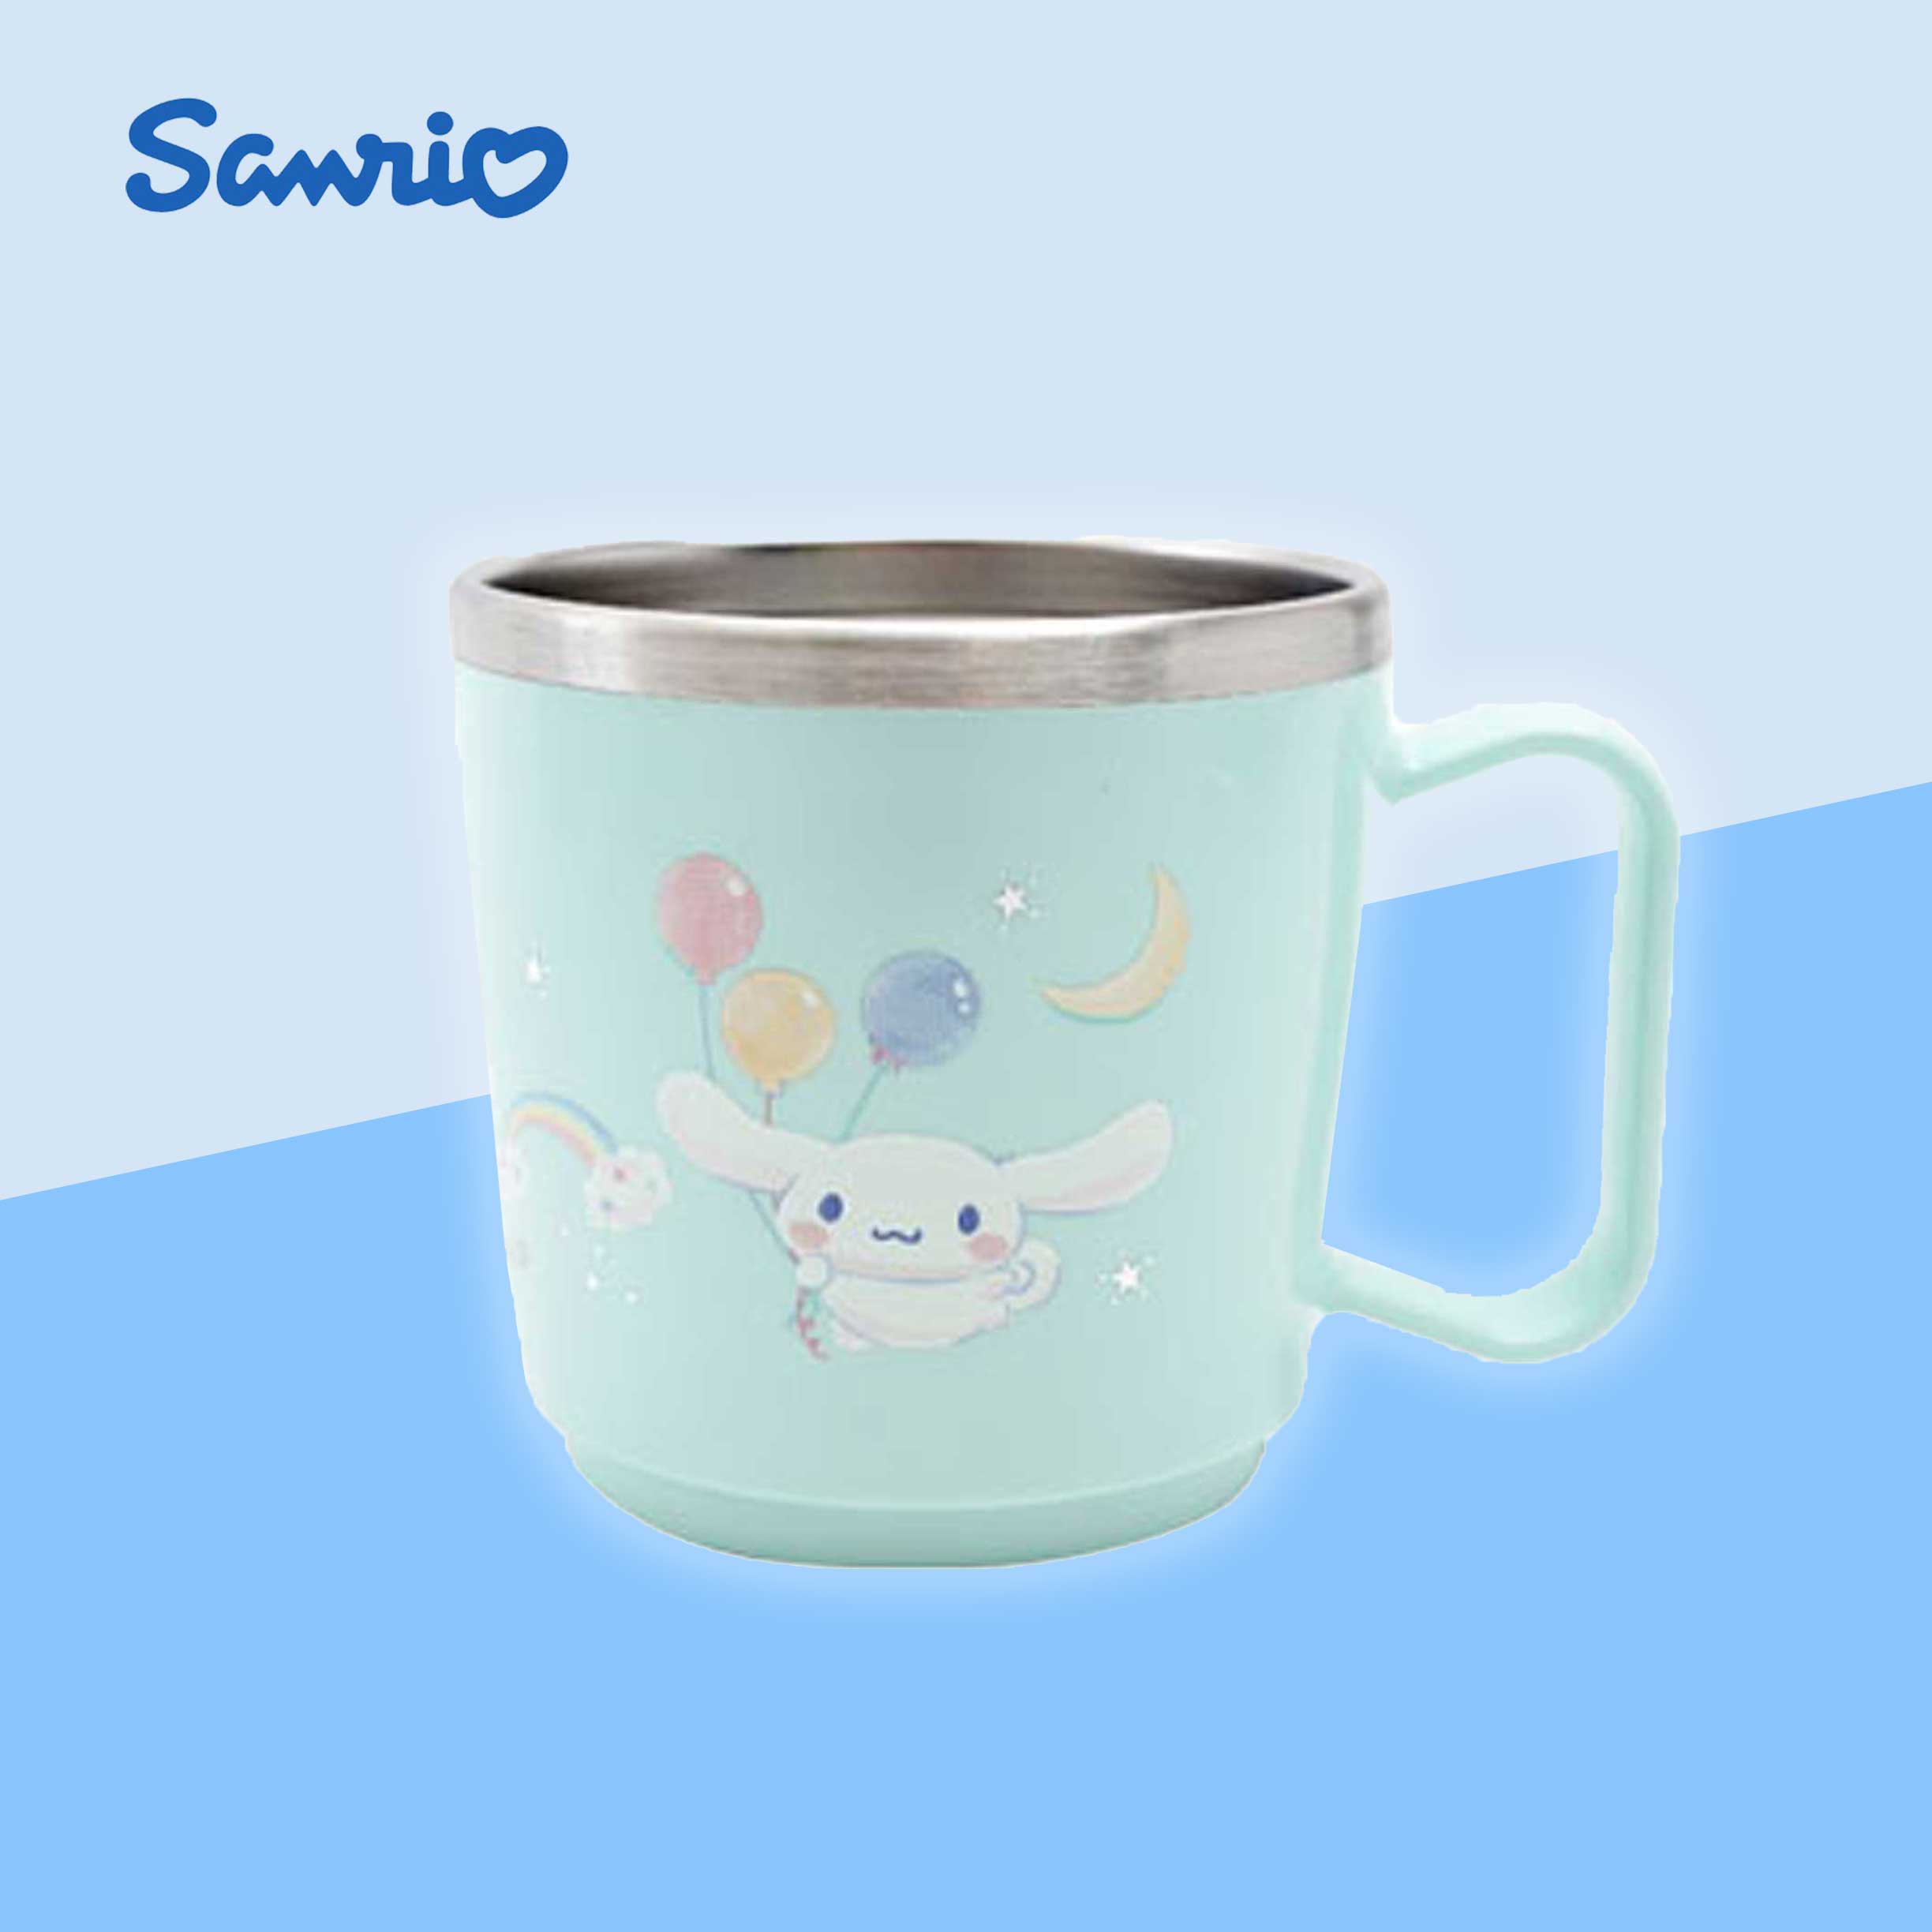 單耳不鏽鋼水杯 210ml-大耳狗 三麗鷗 Sanrio 韓國進口正版授權